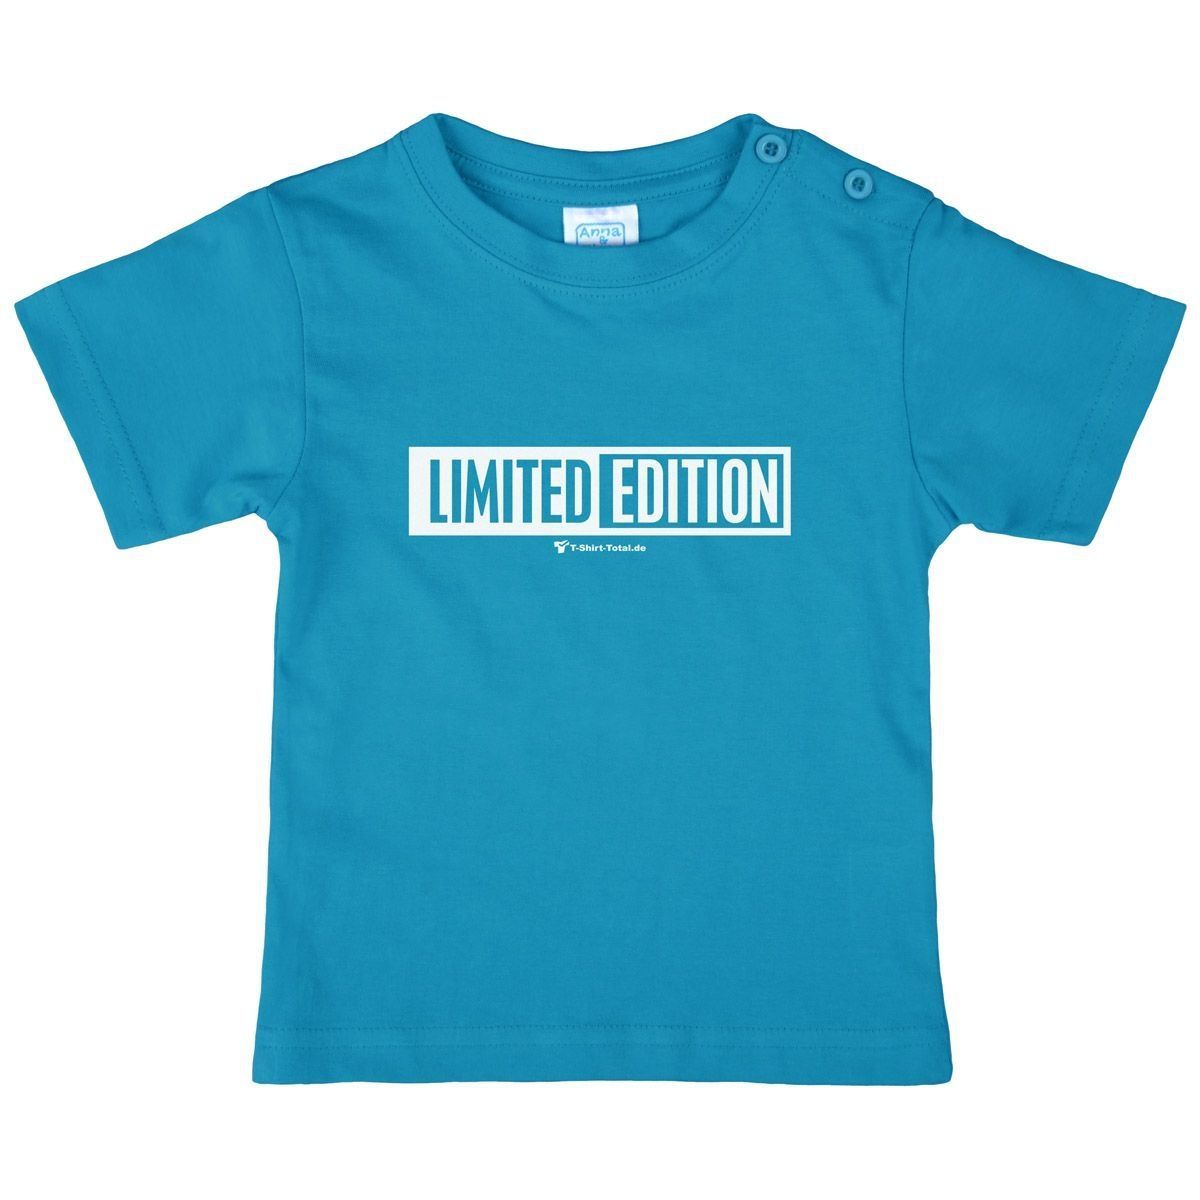 Limited Edition Kinder T-Shirt türkis 80 / 86